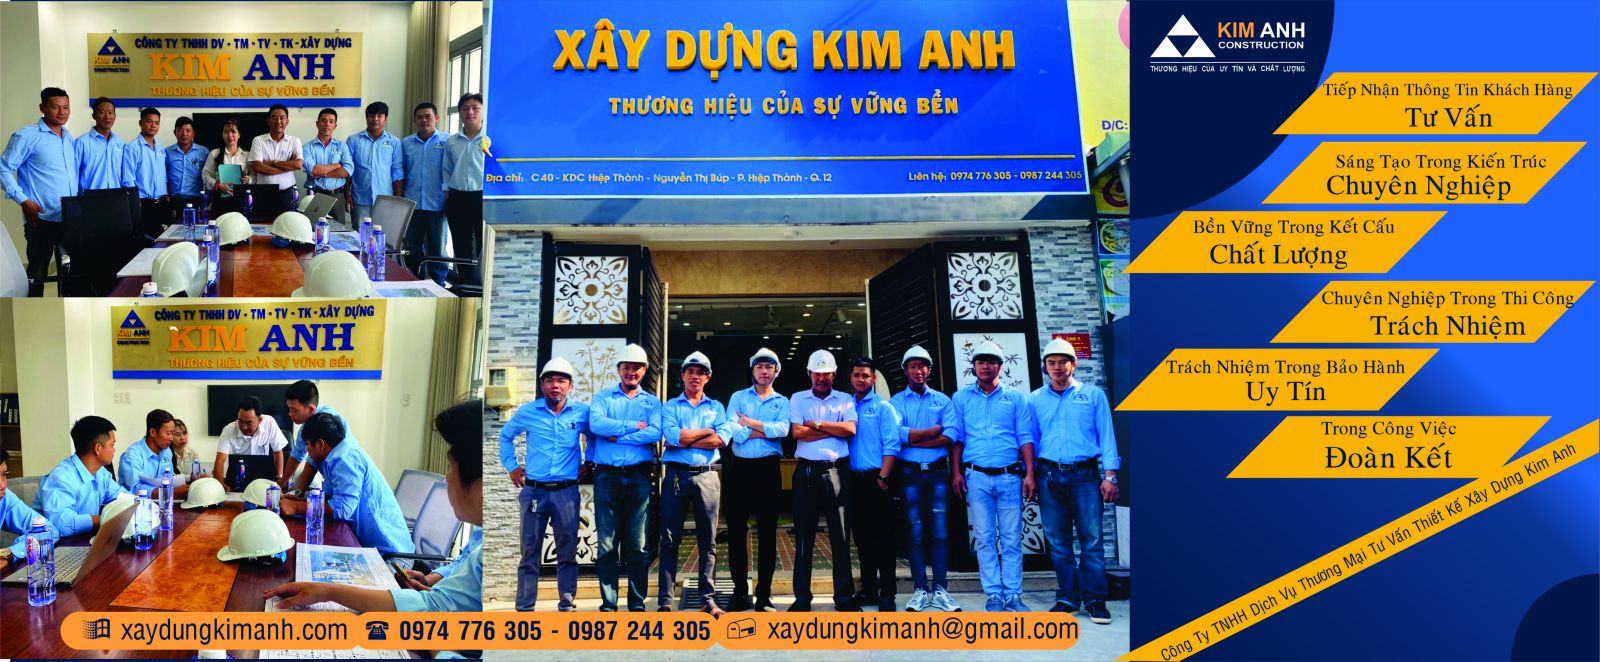 Công ty xây Dựng Kim Anh-xaydungkimanh.com